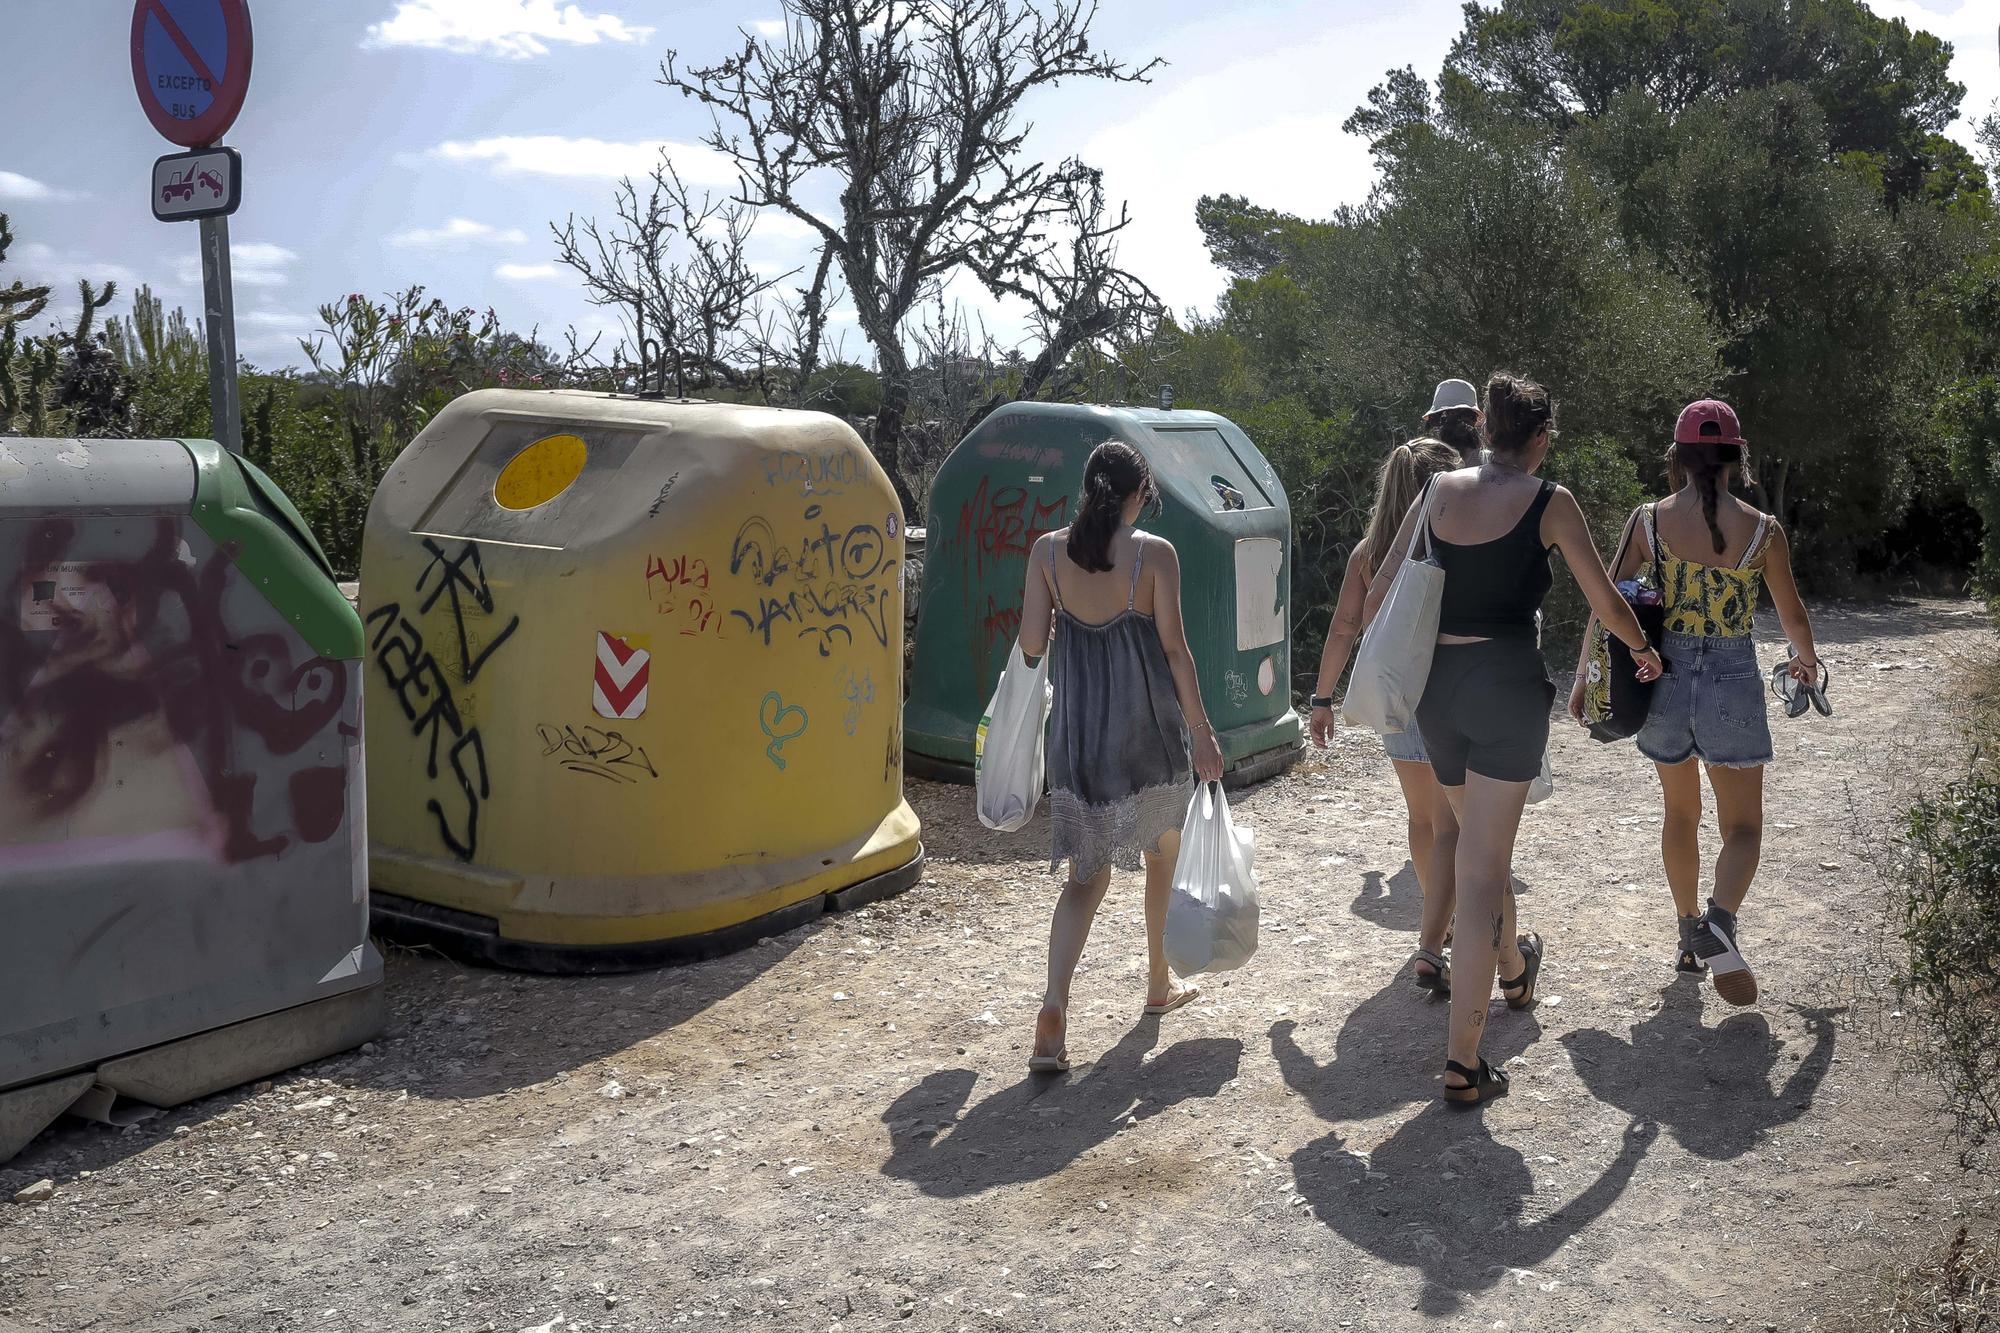 Heillos überlaufen: So geht es in der Instagram-Bucht Caló des Moro auf Mallorca zu